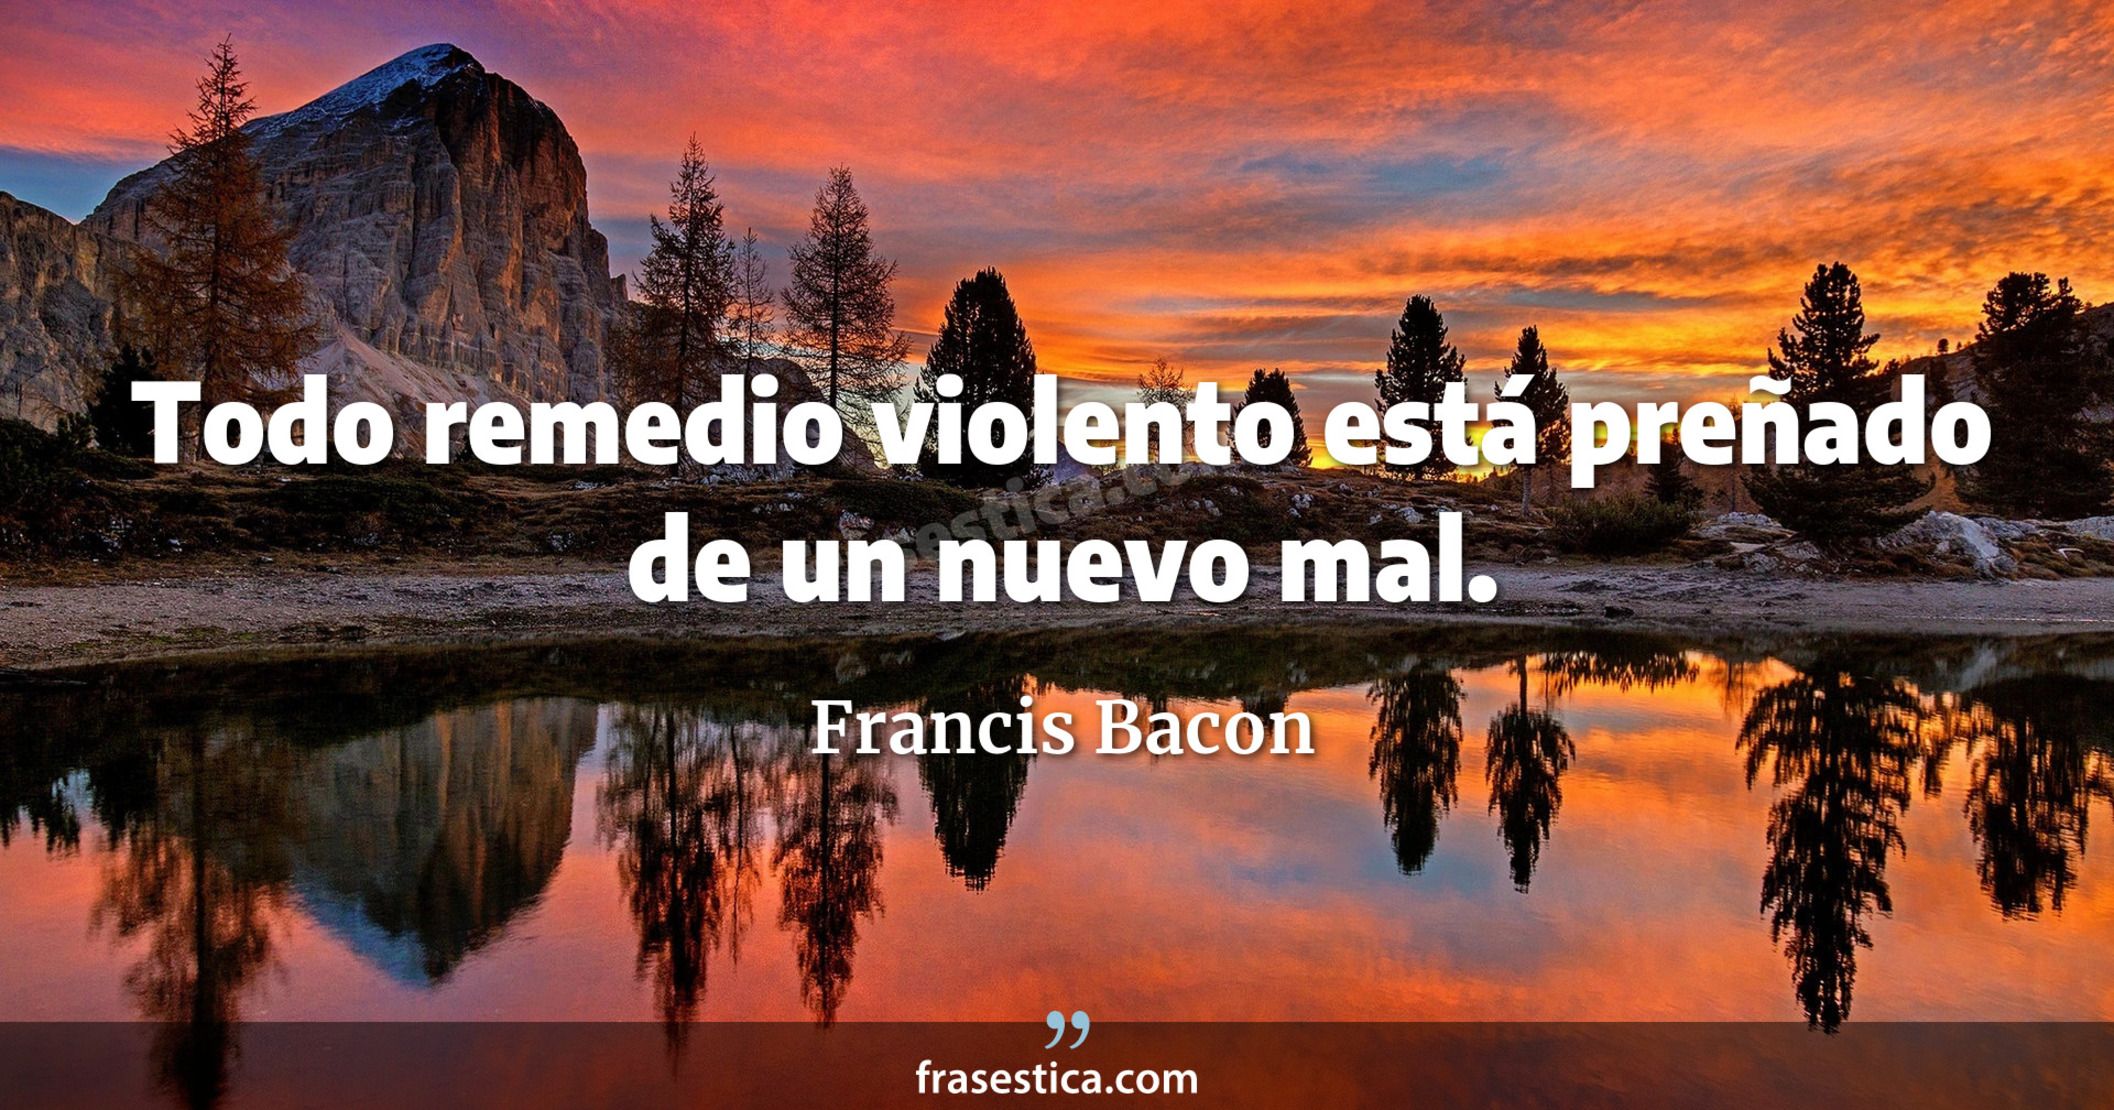 Todo remedio violento está preñado de un nuevo mal. - Francis Bacon